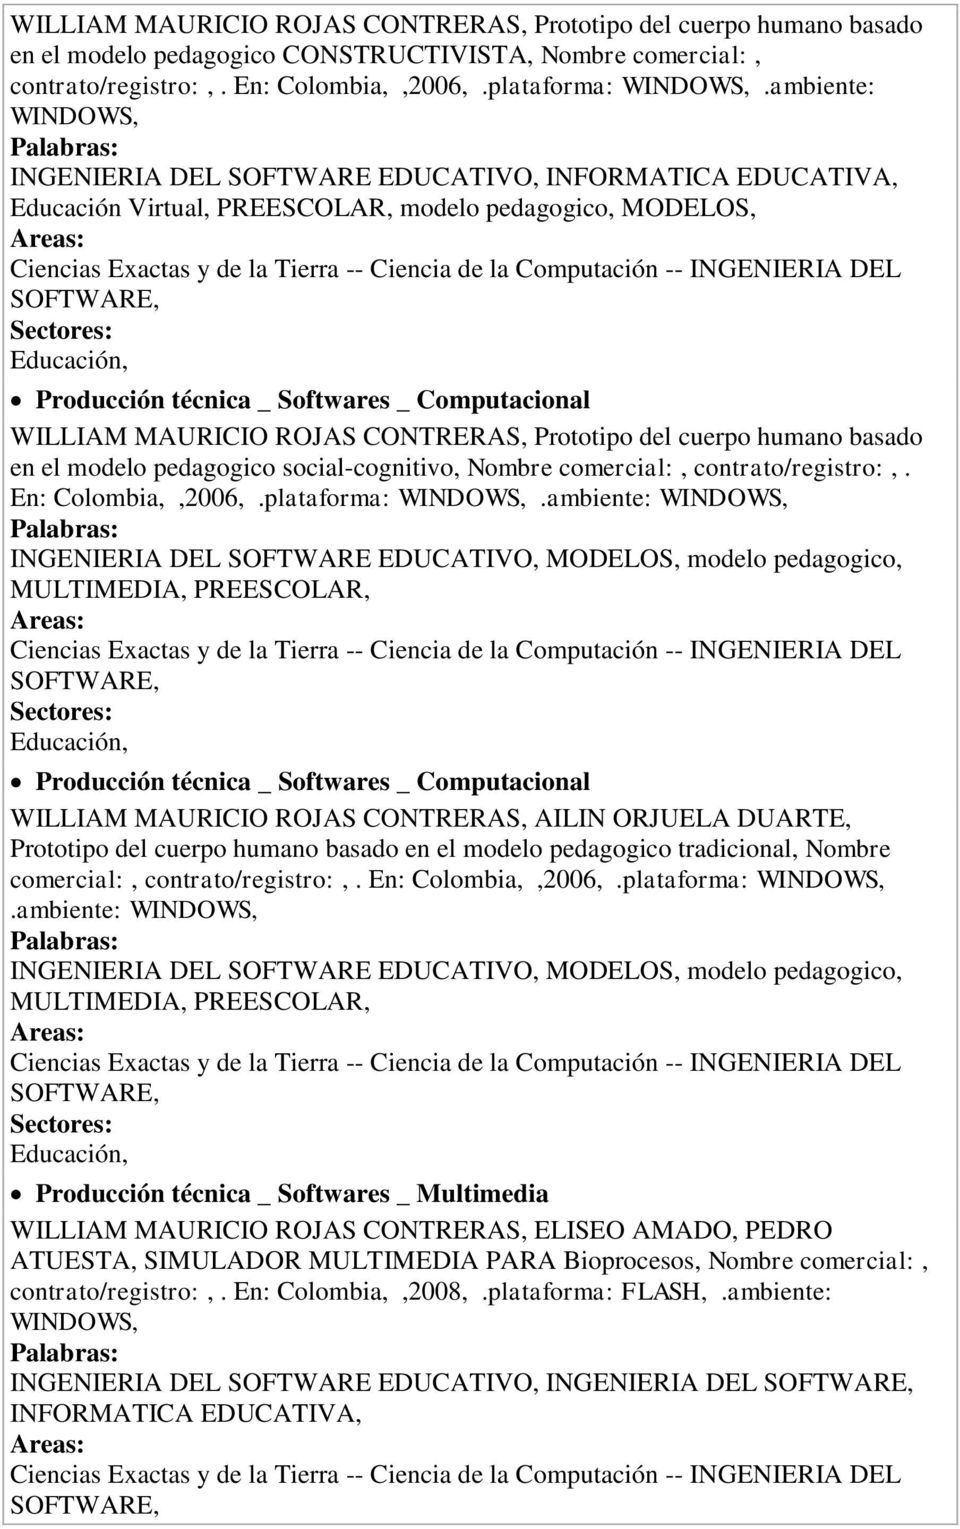 basado en el modelo pedagogico social-cognitivo, Nombre comercial:, contrato/registro:,. En: Colombia,,2006,.plataforma: WINDOWS,.